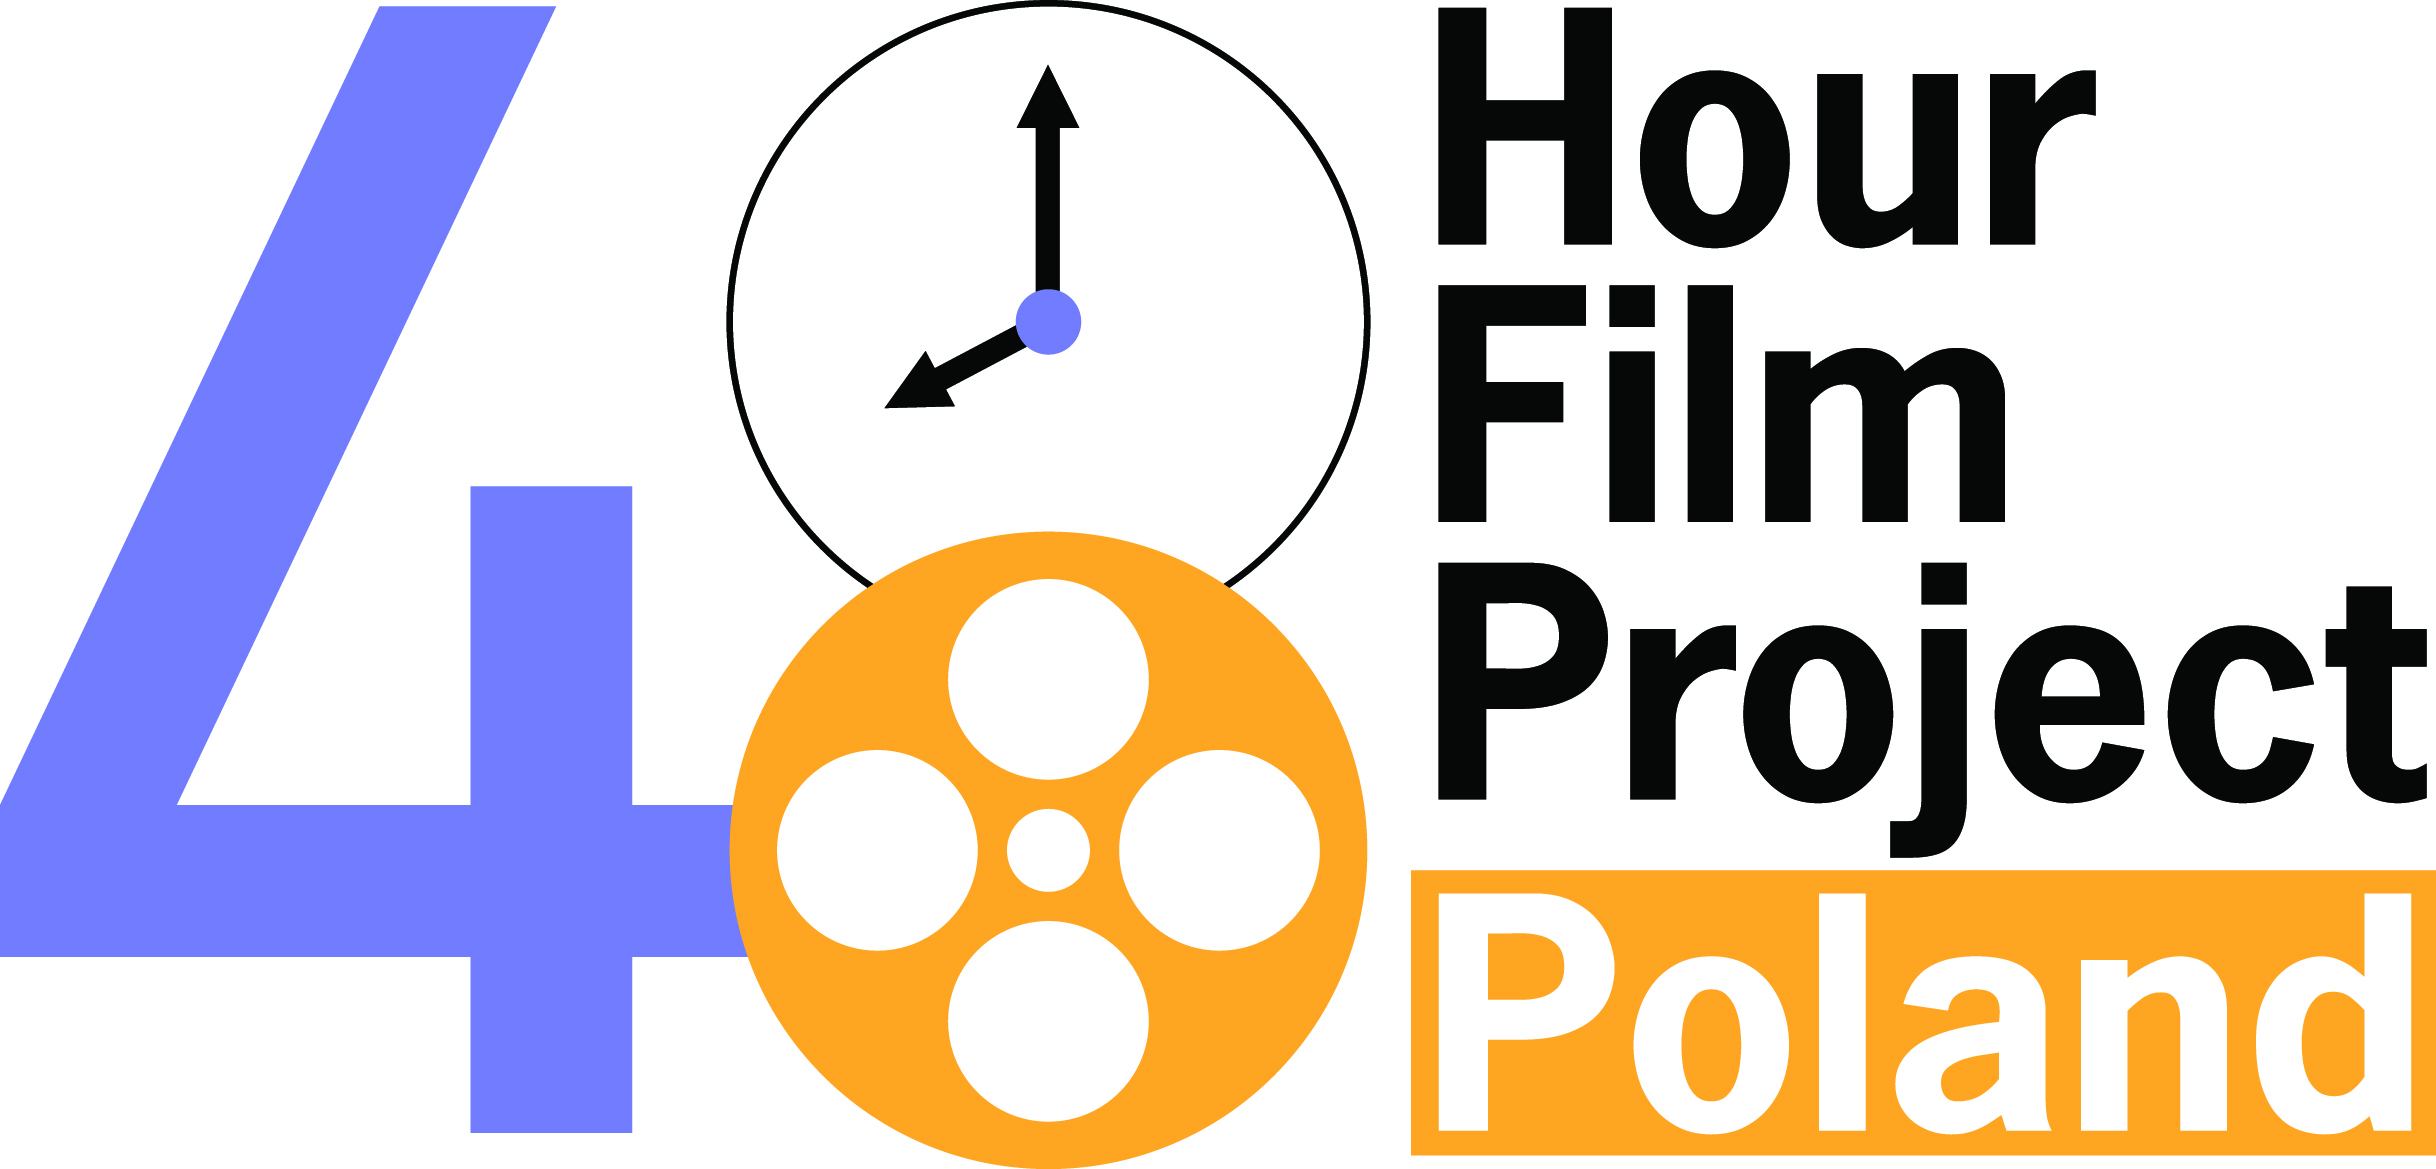 Zbliża się szósta edycja 48 Hour Film Project